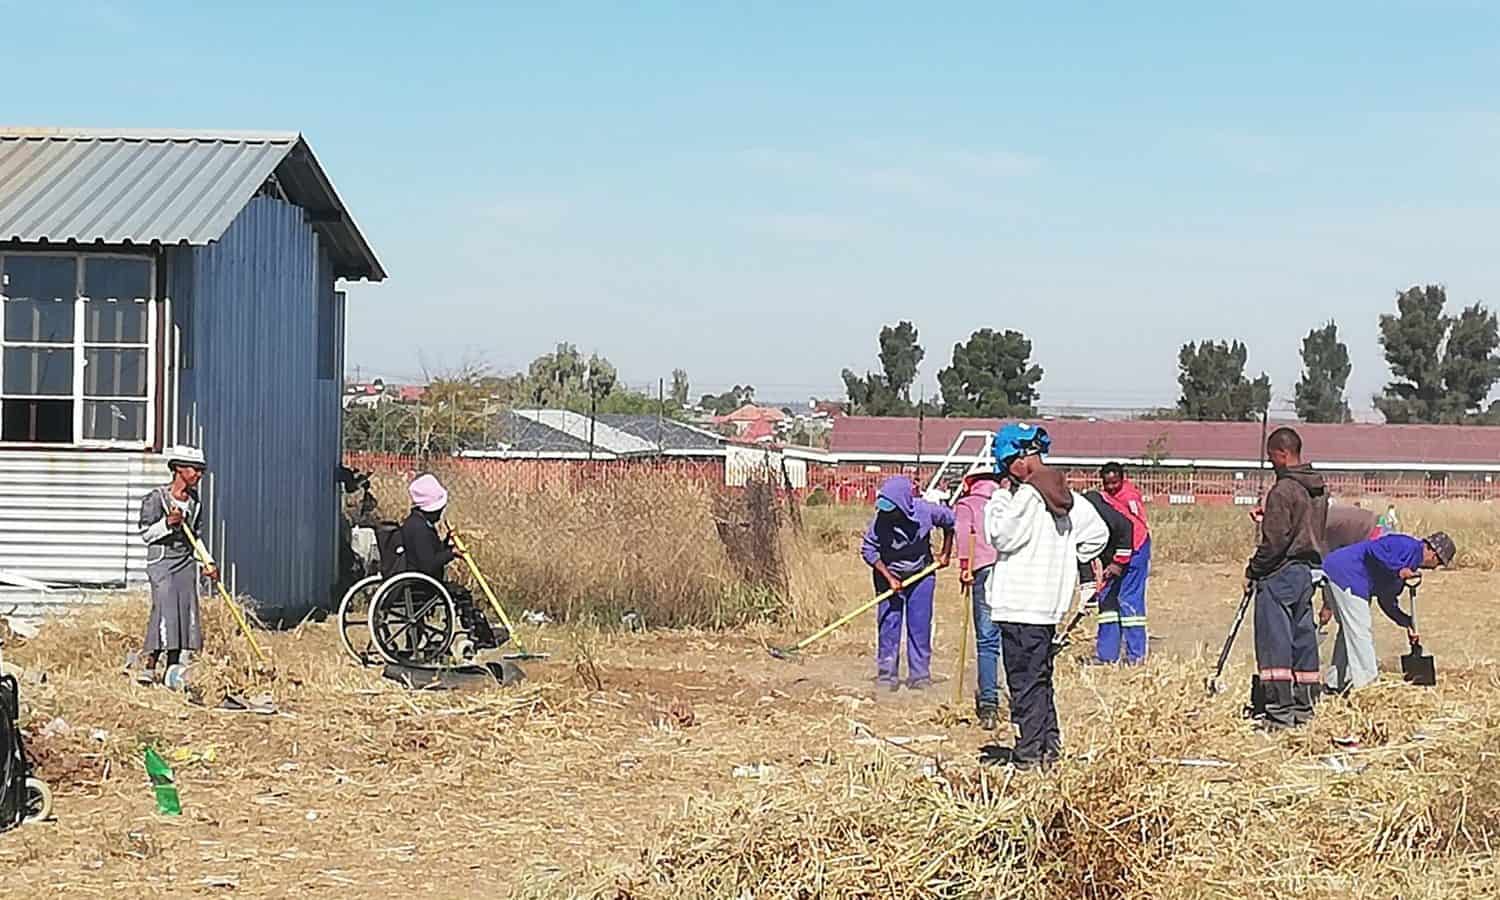 人道主义组织立即通知将安装和更新aquaponics”系统残疾农民合作社的南非,帮助他们更好地融入经济。